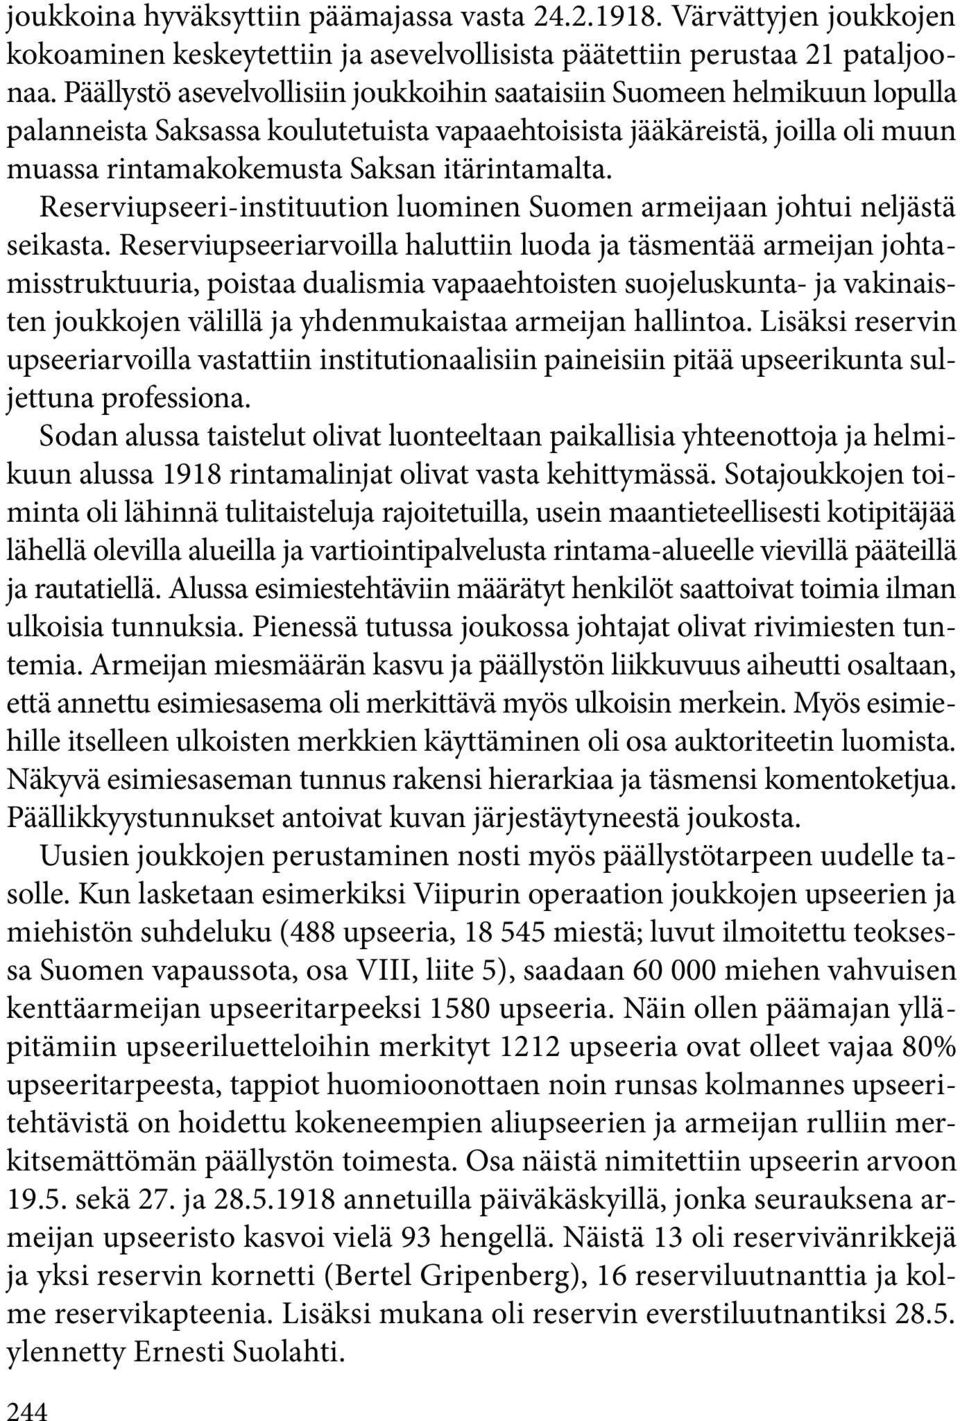 Reserviupseeri-instituution luominen Suomen armeijaan johtui neljästä seikasta.